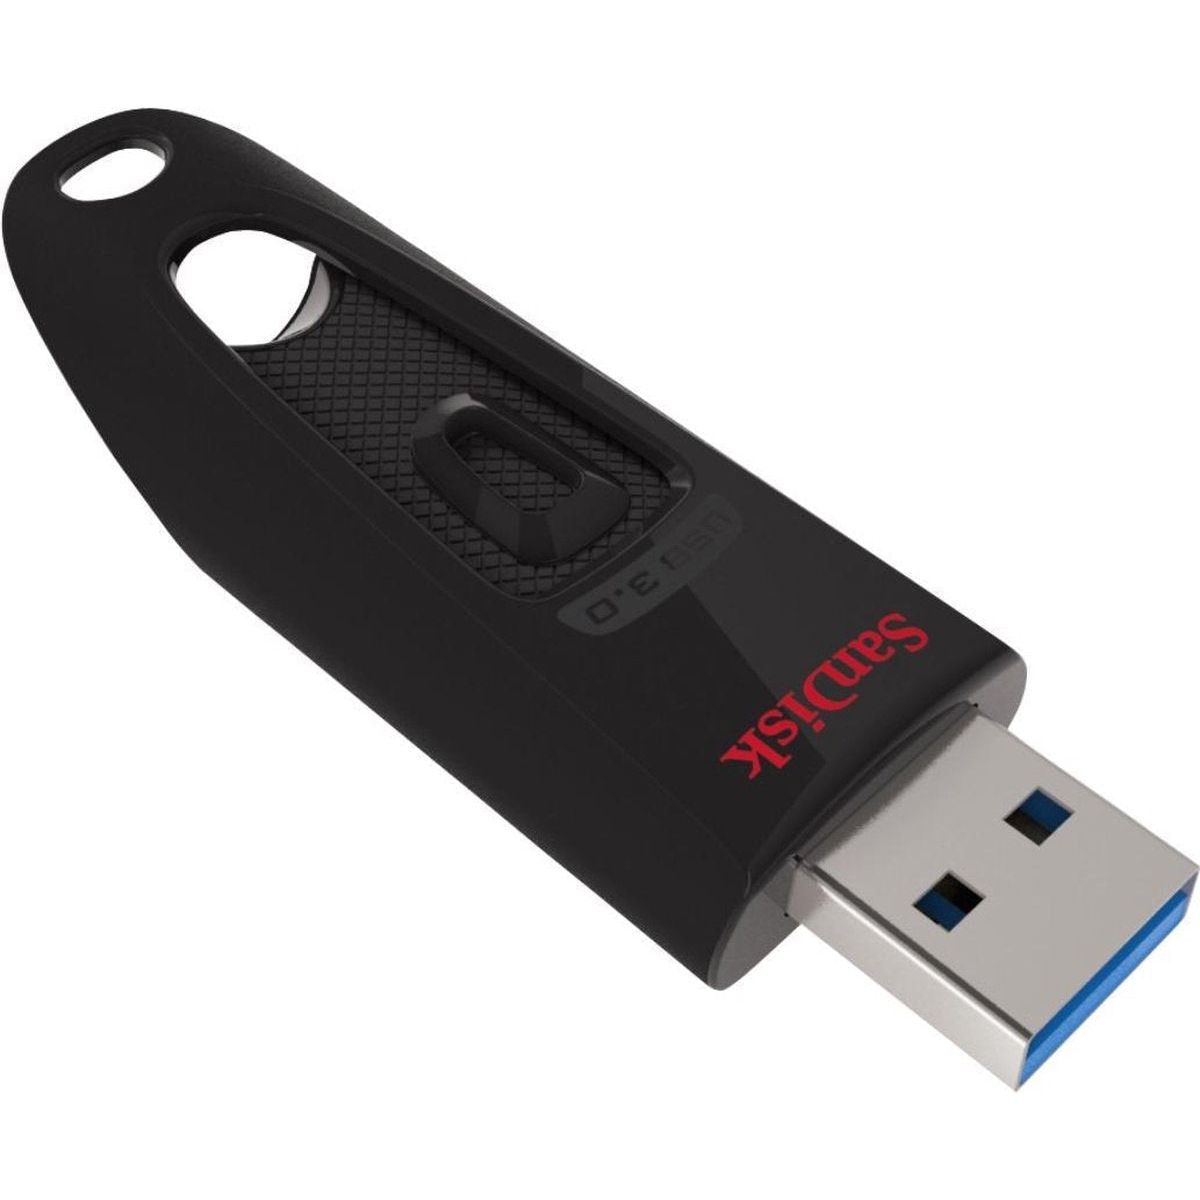 SanDisk Cruzer Ultra USB stick 128GB USB 3.0A - USB Drive - NLMAX